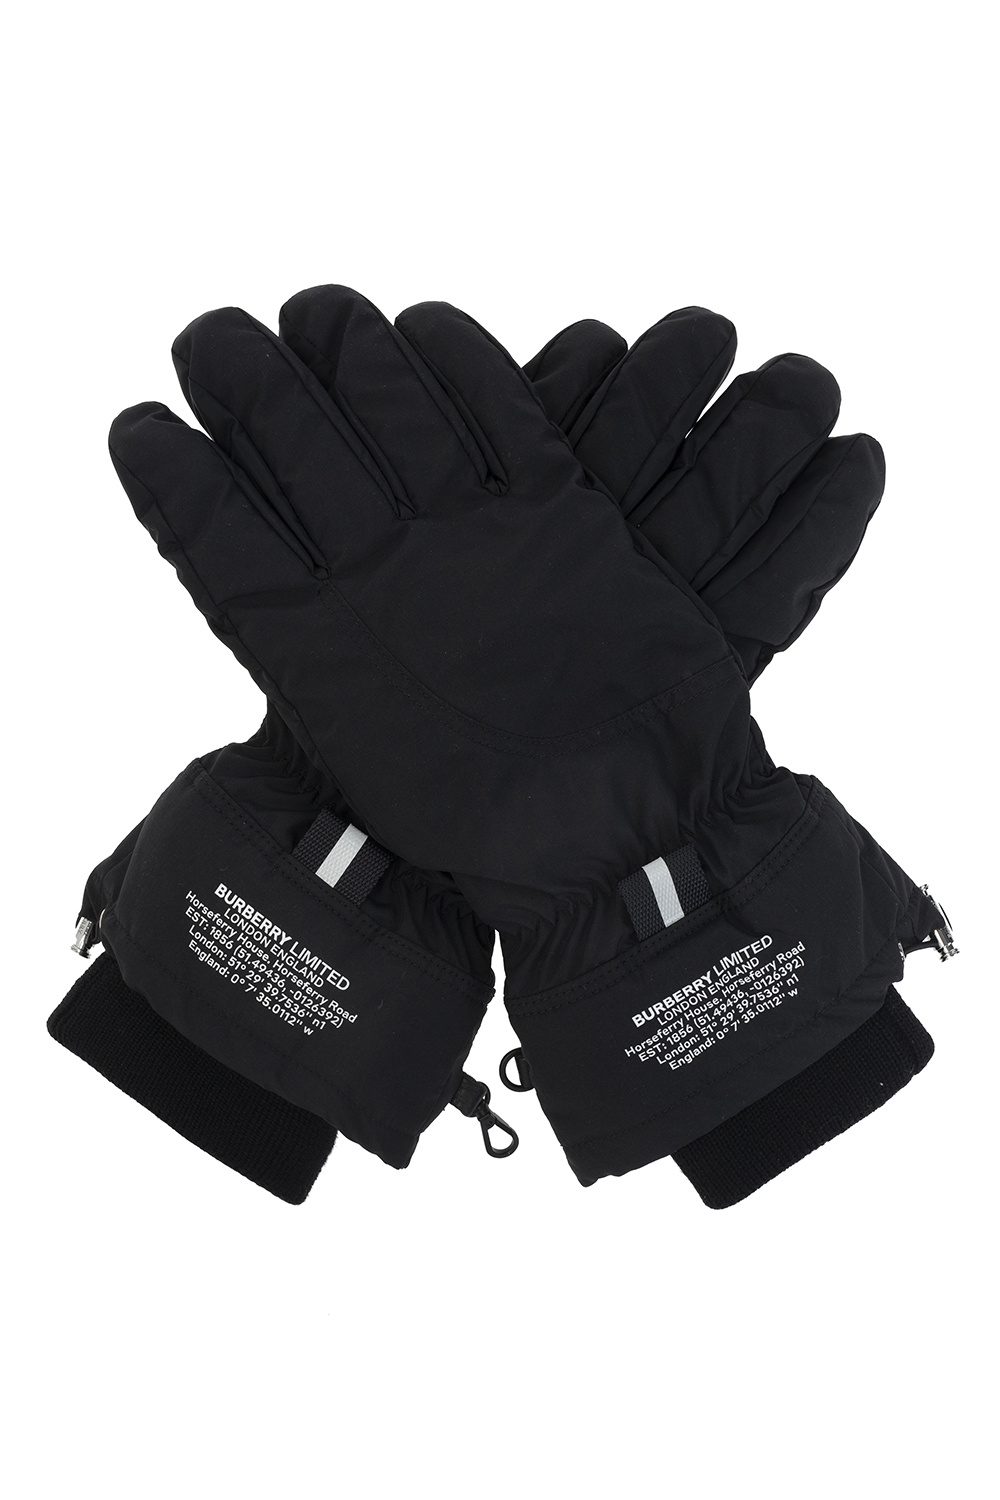 Burberry Logo gloves